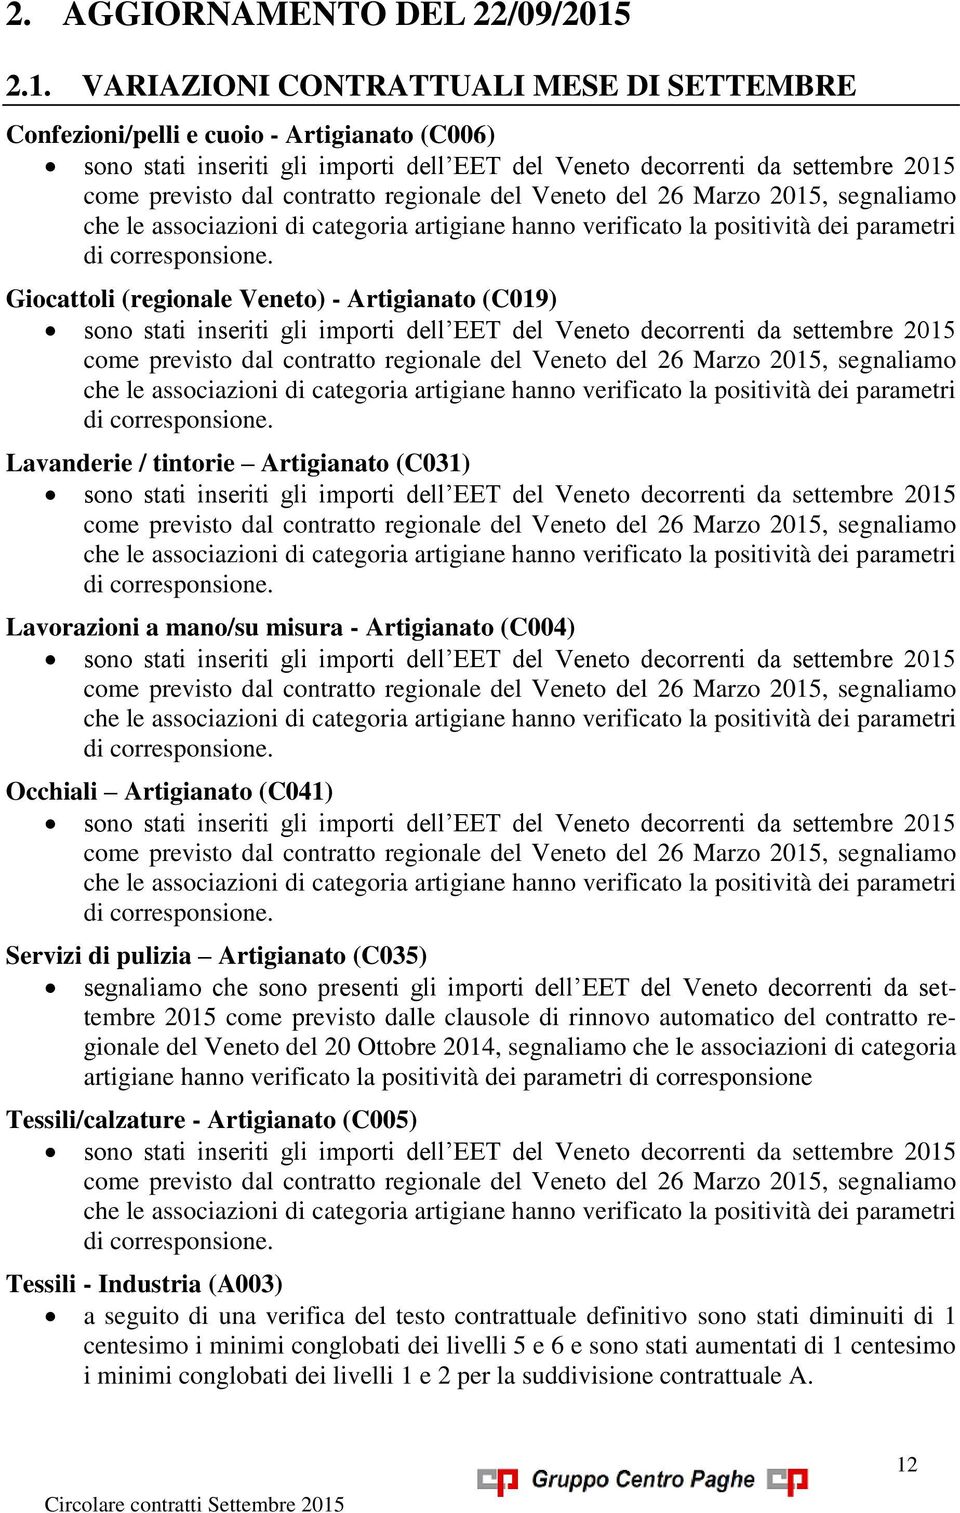 contratto regionale del Veneto del 26 Marzo 2015, segnaliamo che le associazioni di categoria artigiane hanno verificato la positività dei parametri di corresponsione.